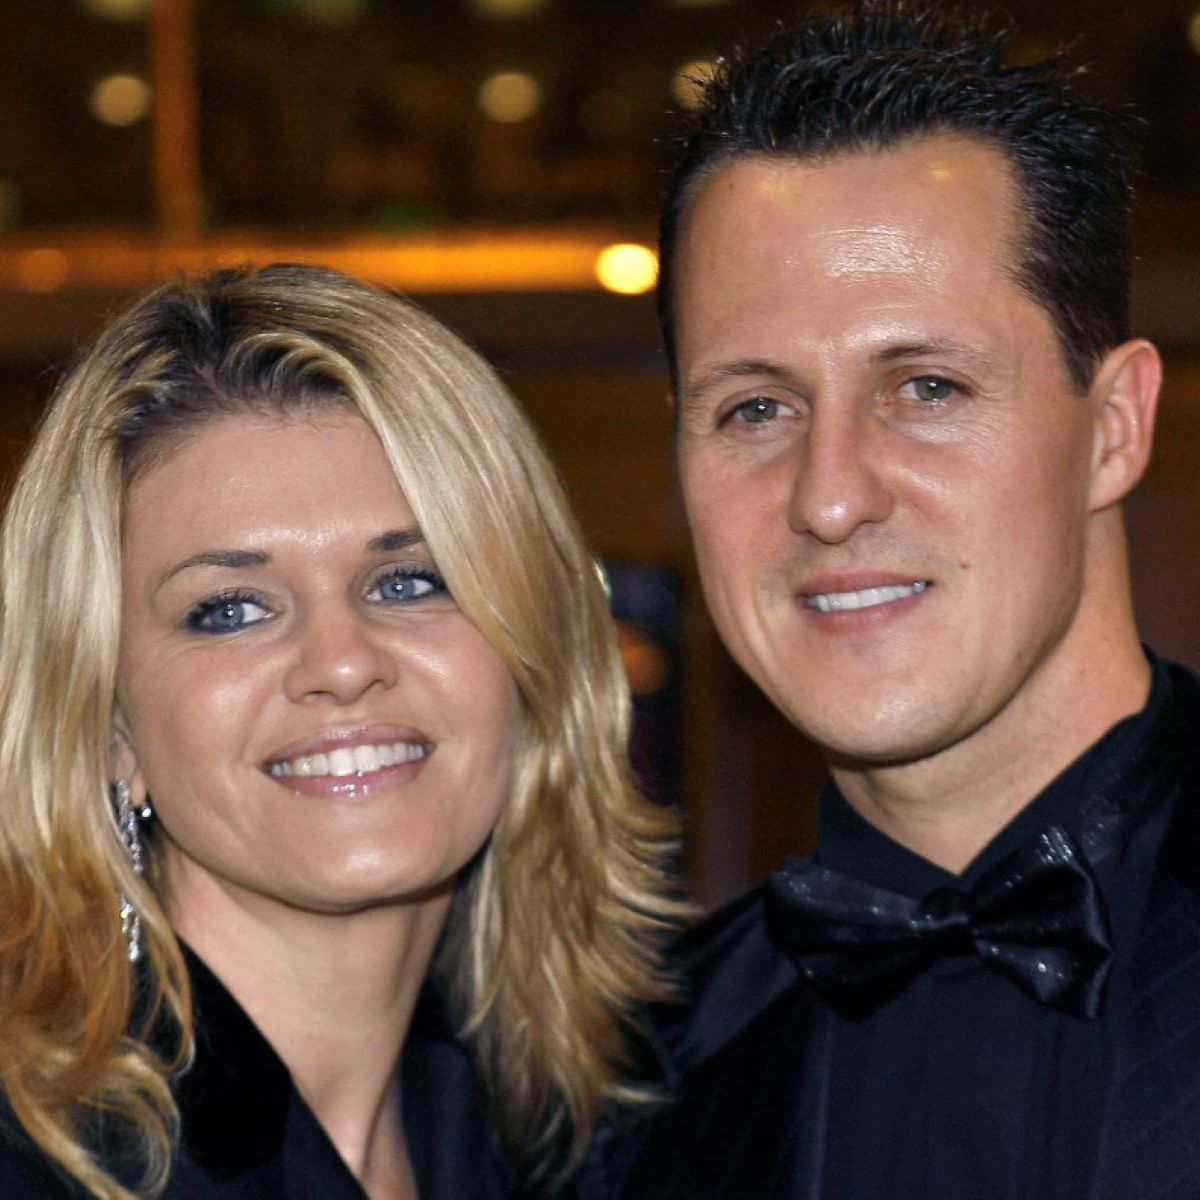 Michael Schumacher Choc Notizia